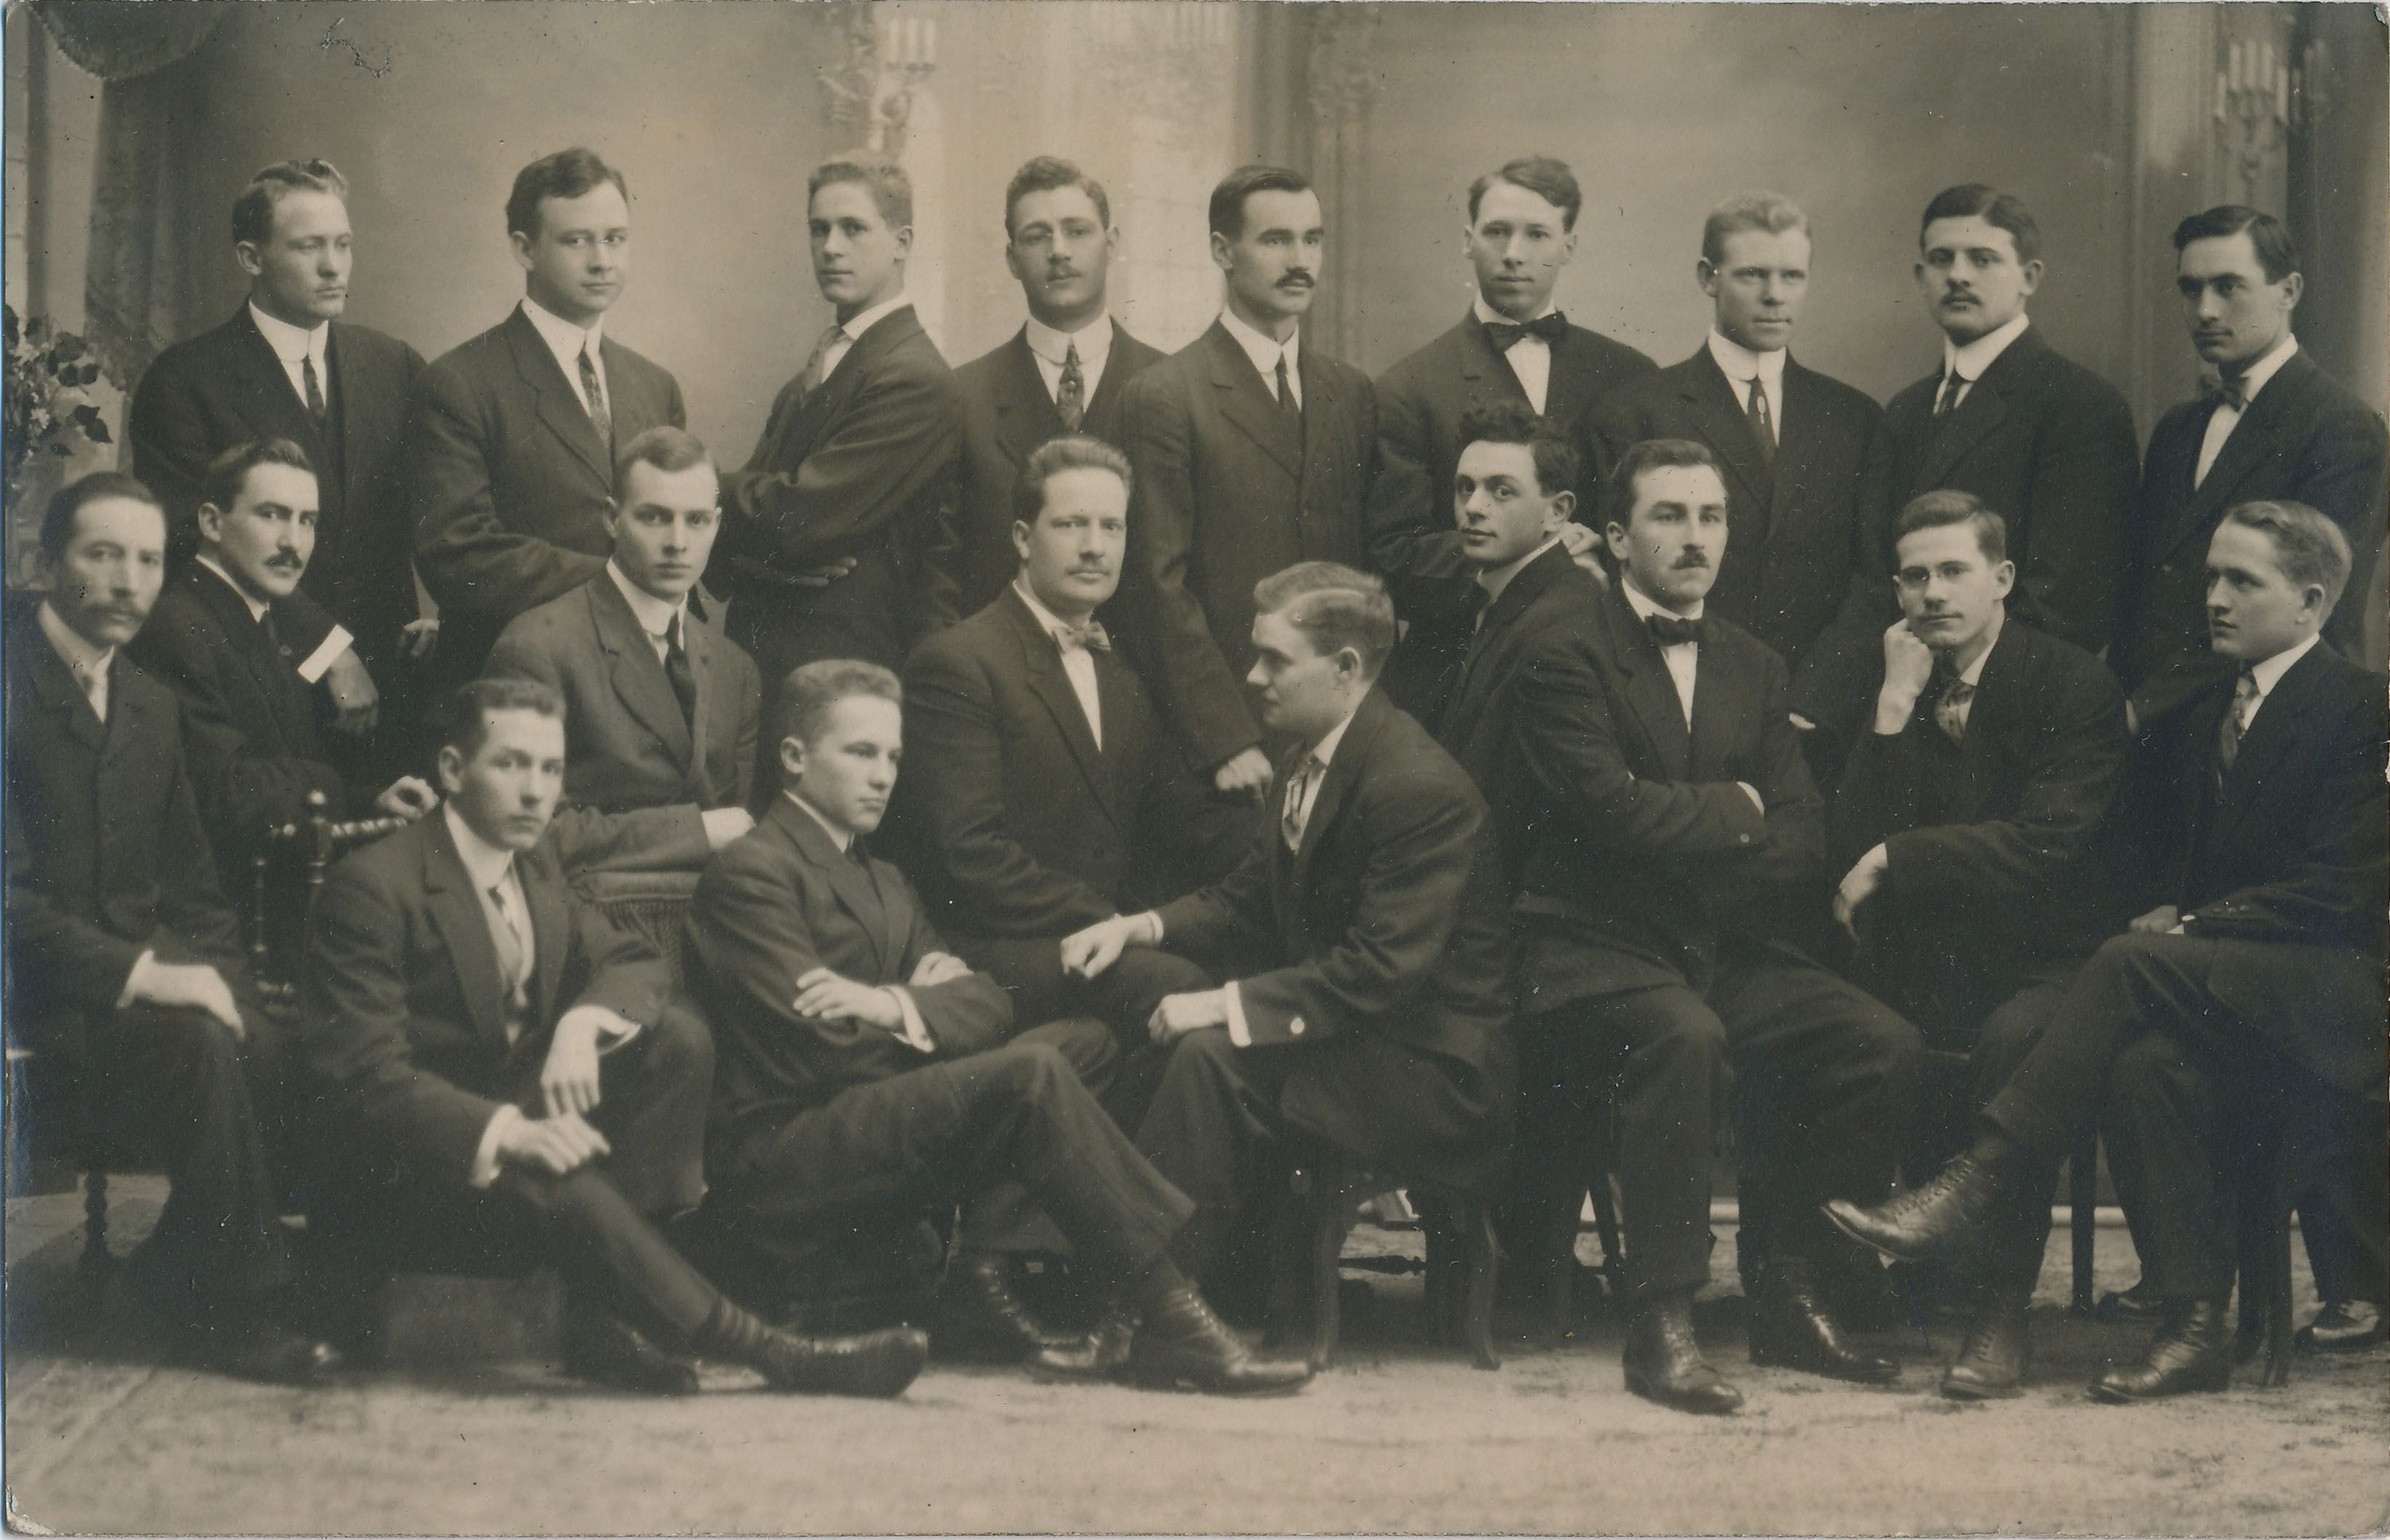 Cheminitz conference, c 1912